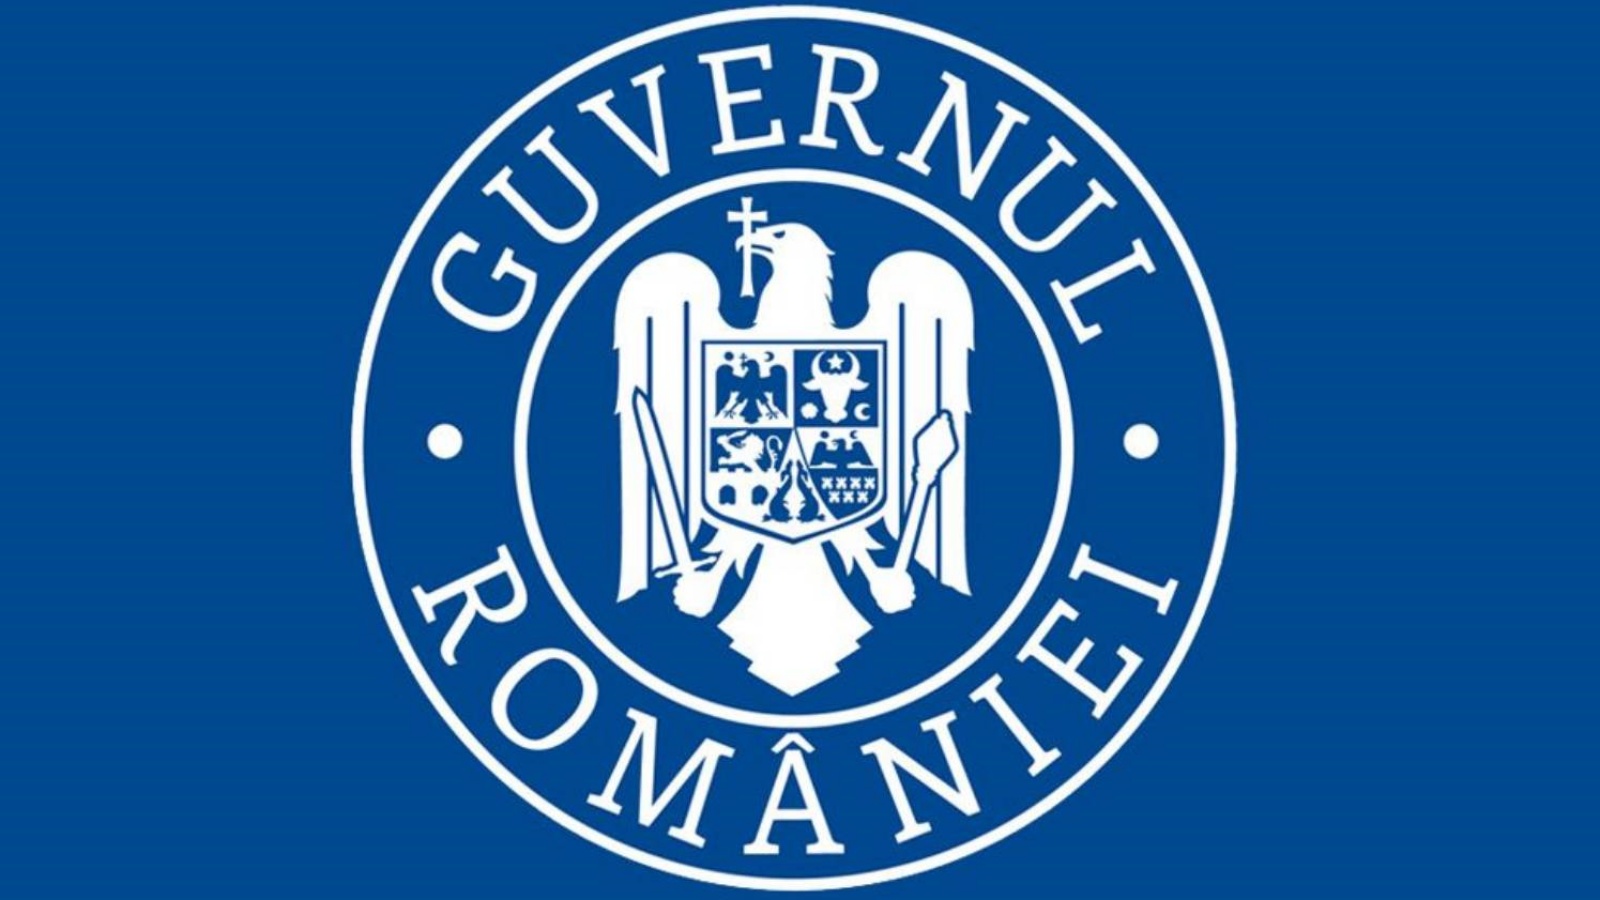 Le formulaire d'inscription numérique pour la Roumanie officiellement annoncé par le gouvernement